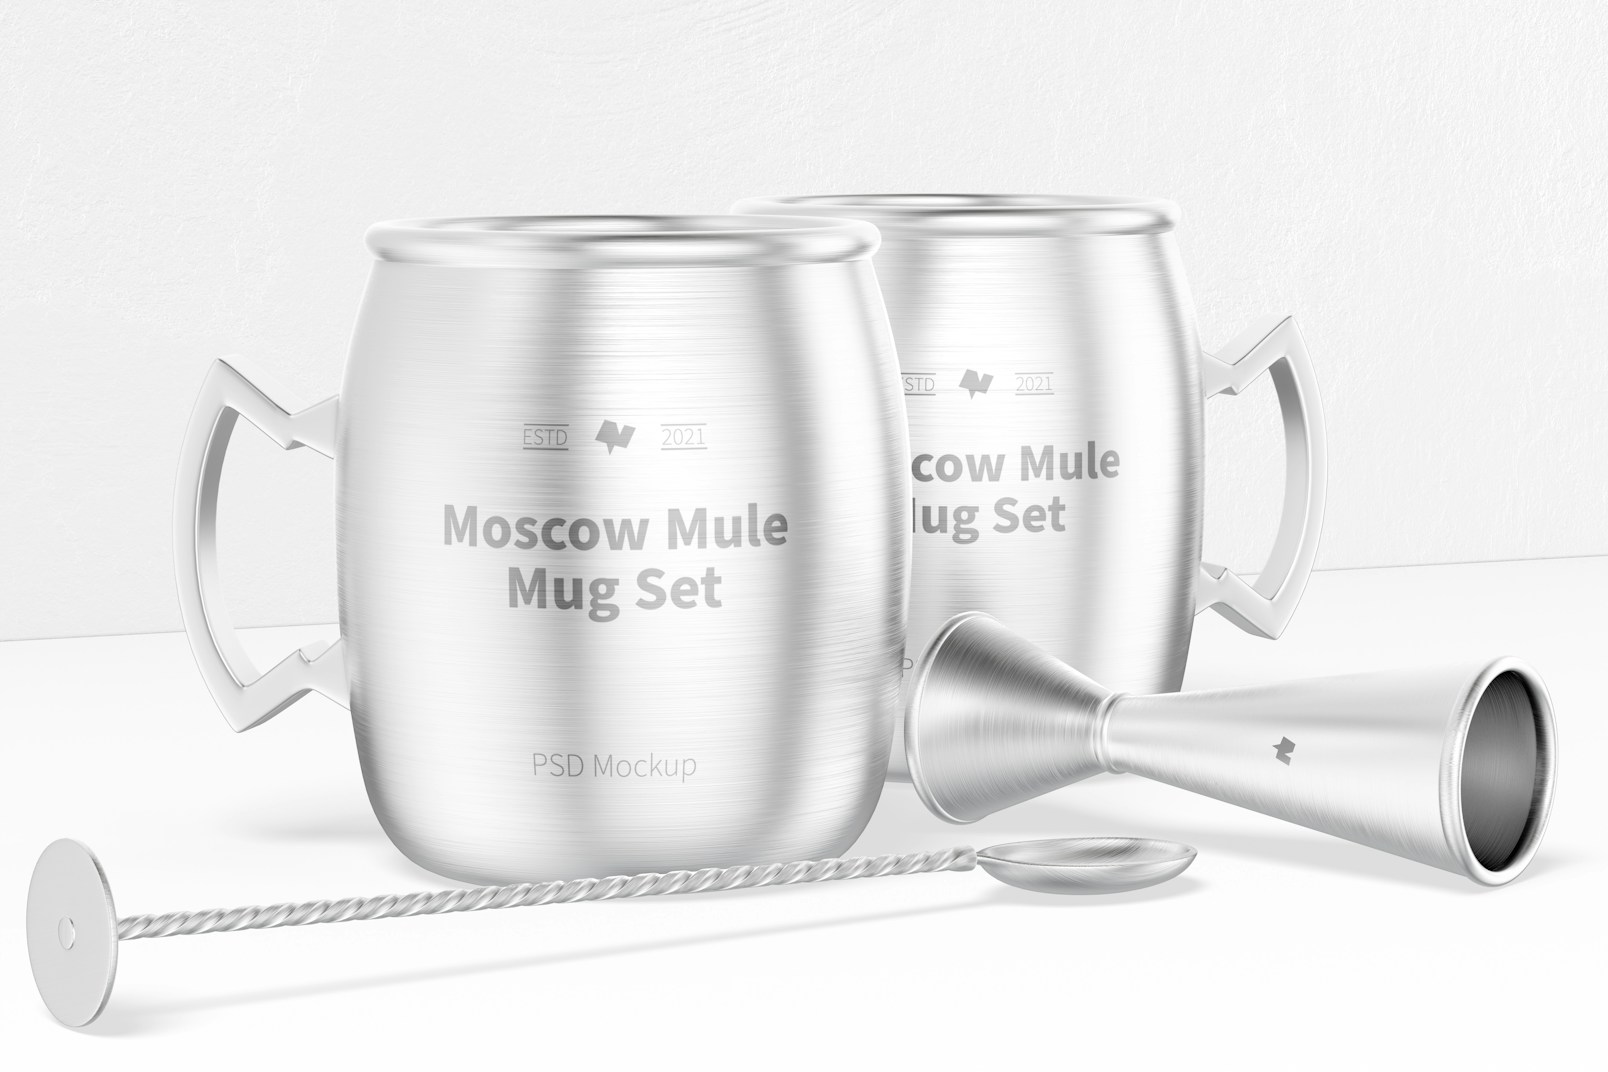 Moscow Mule Mug Set Mockup